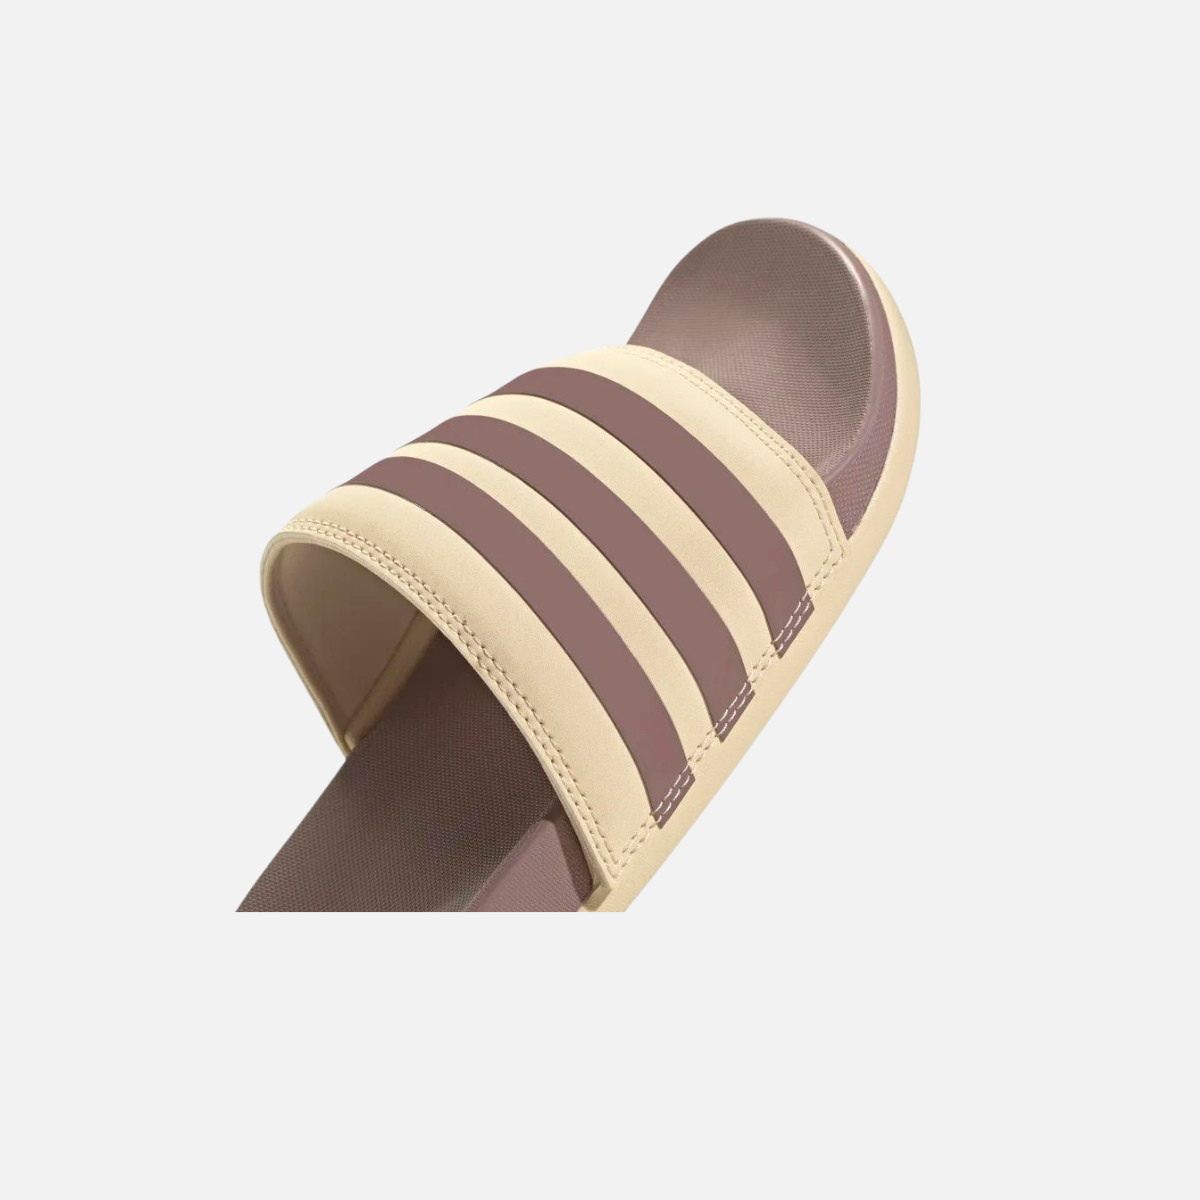 Adidas Adilette comfort slides-Purple/Sand Strata